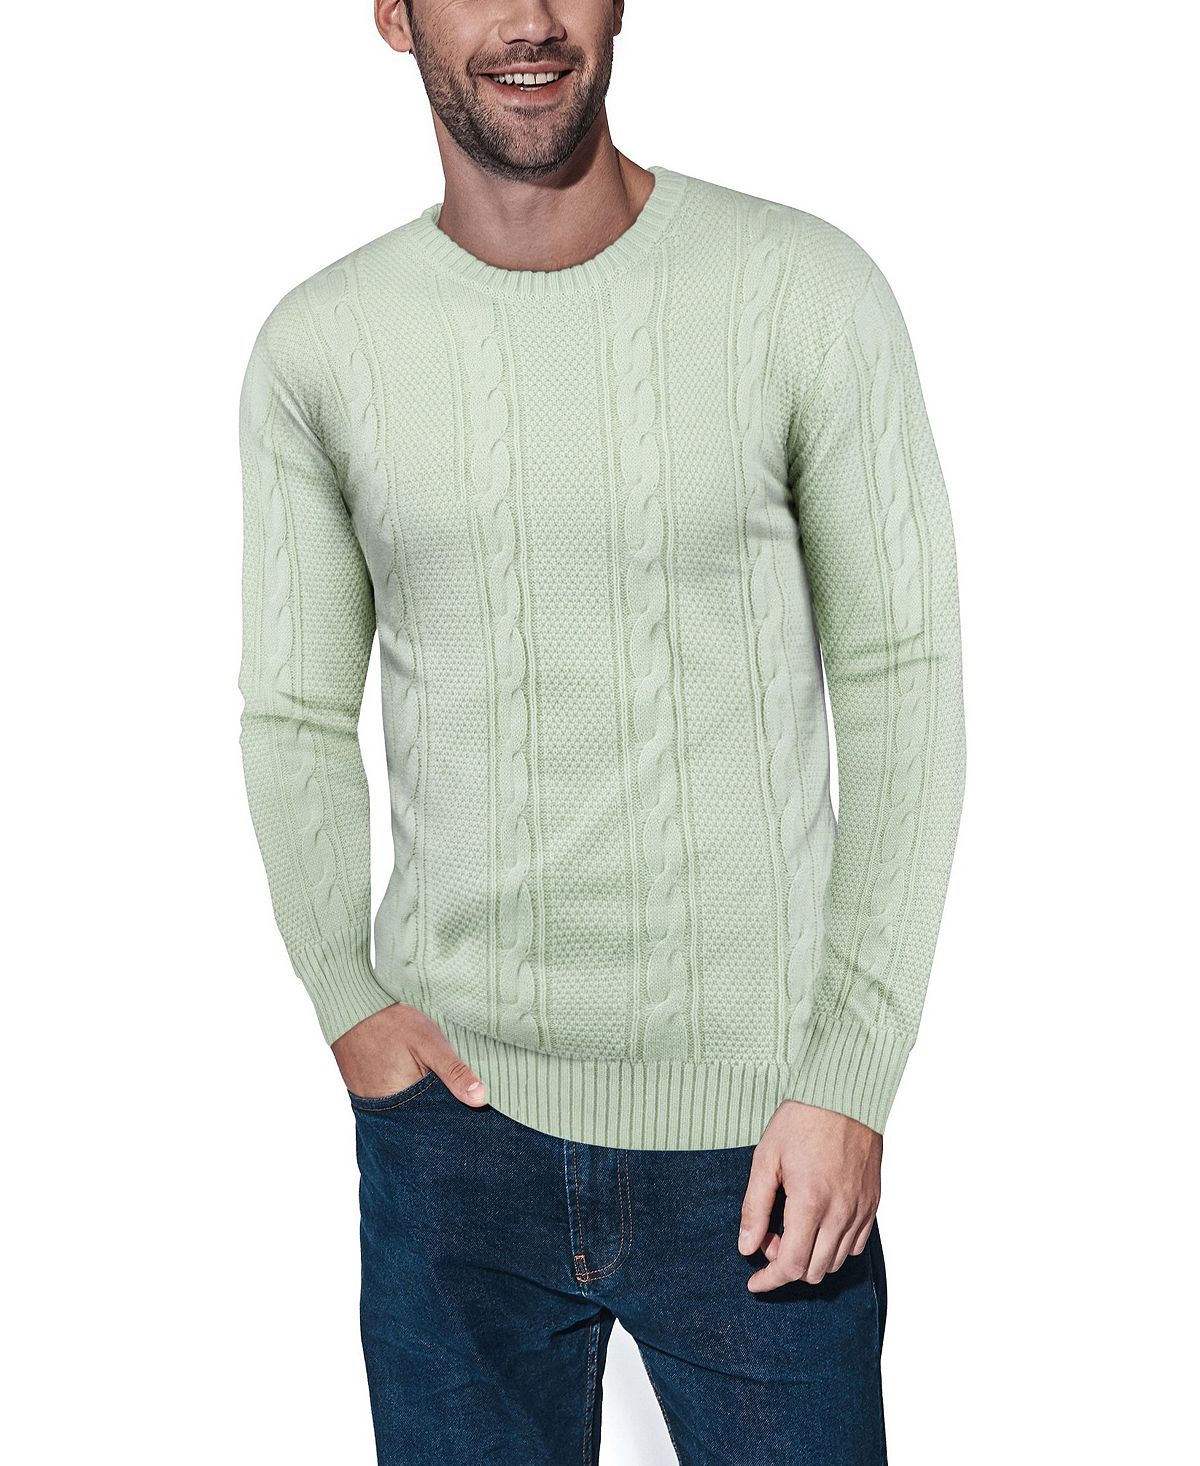 Мужской вязаный свитер косами X-Ray, мульти пуловер с круглым вырезом xxl зеленый